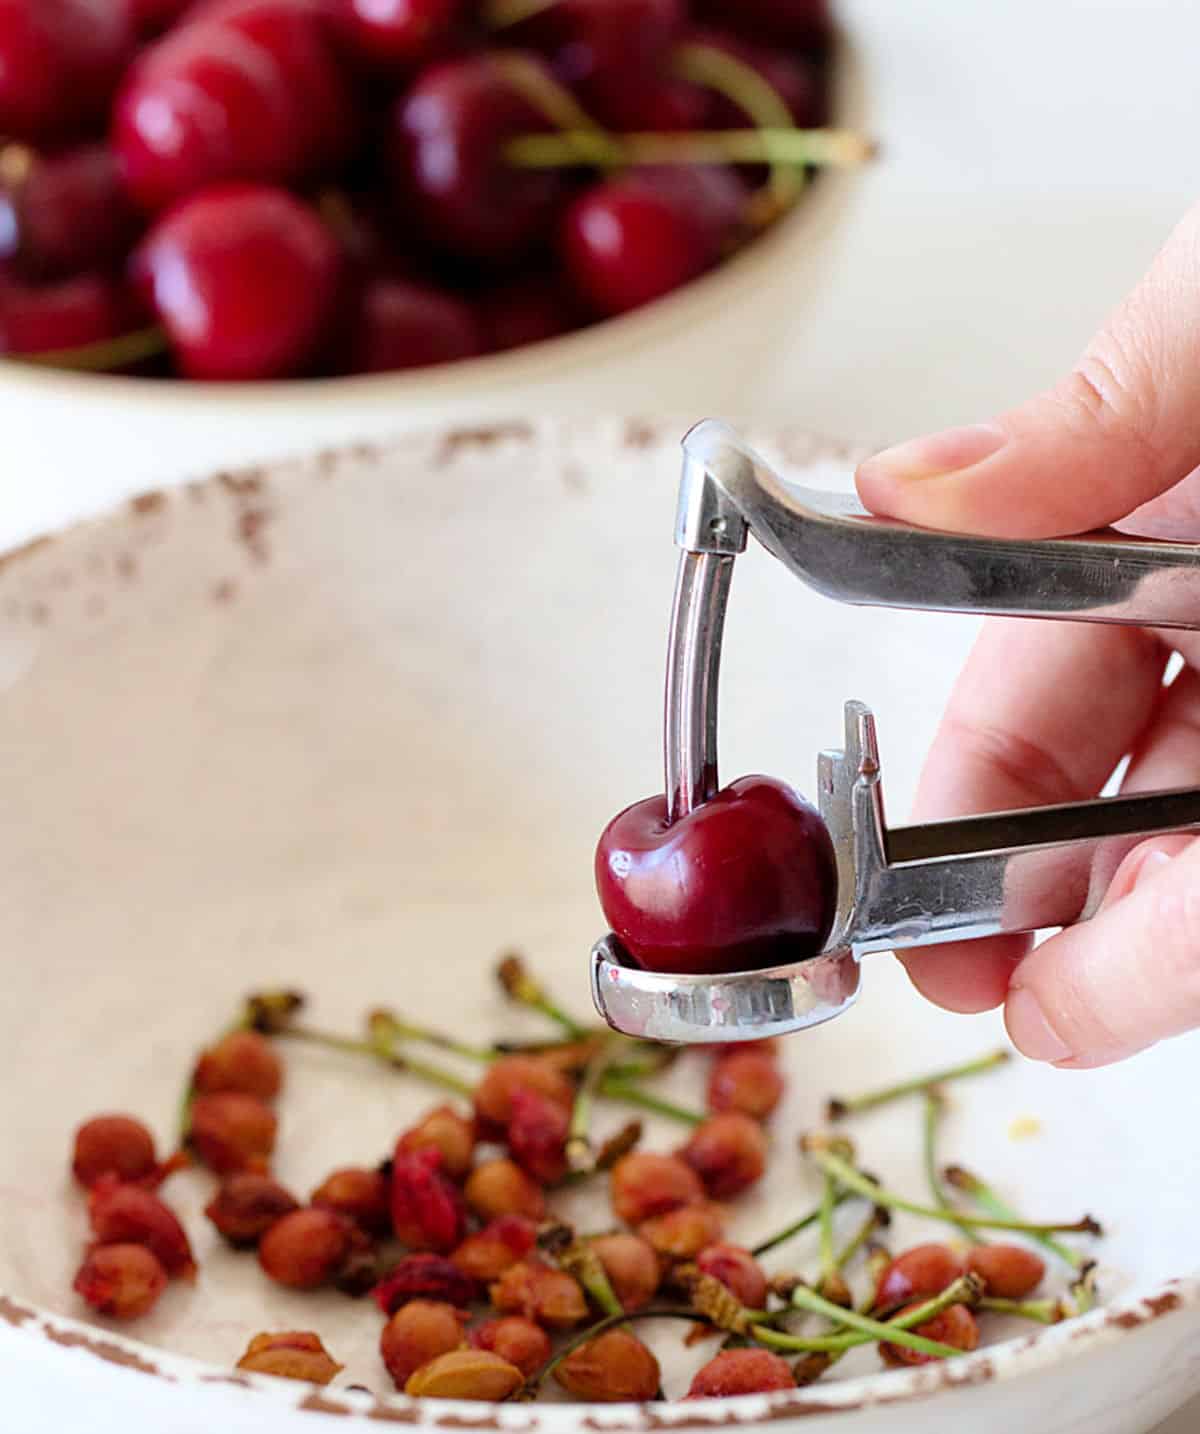 Hand pitting cherries over white bowl.